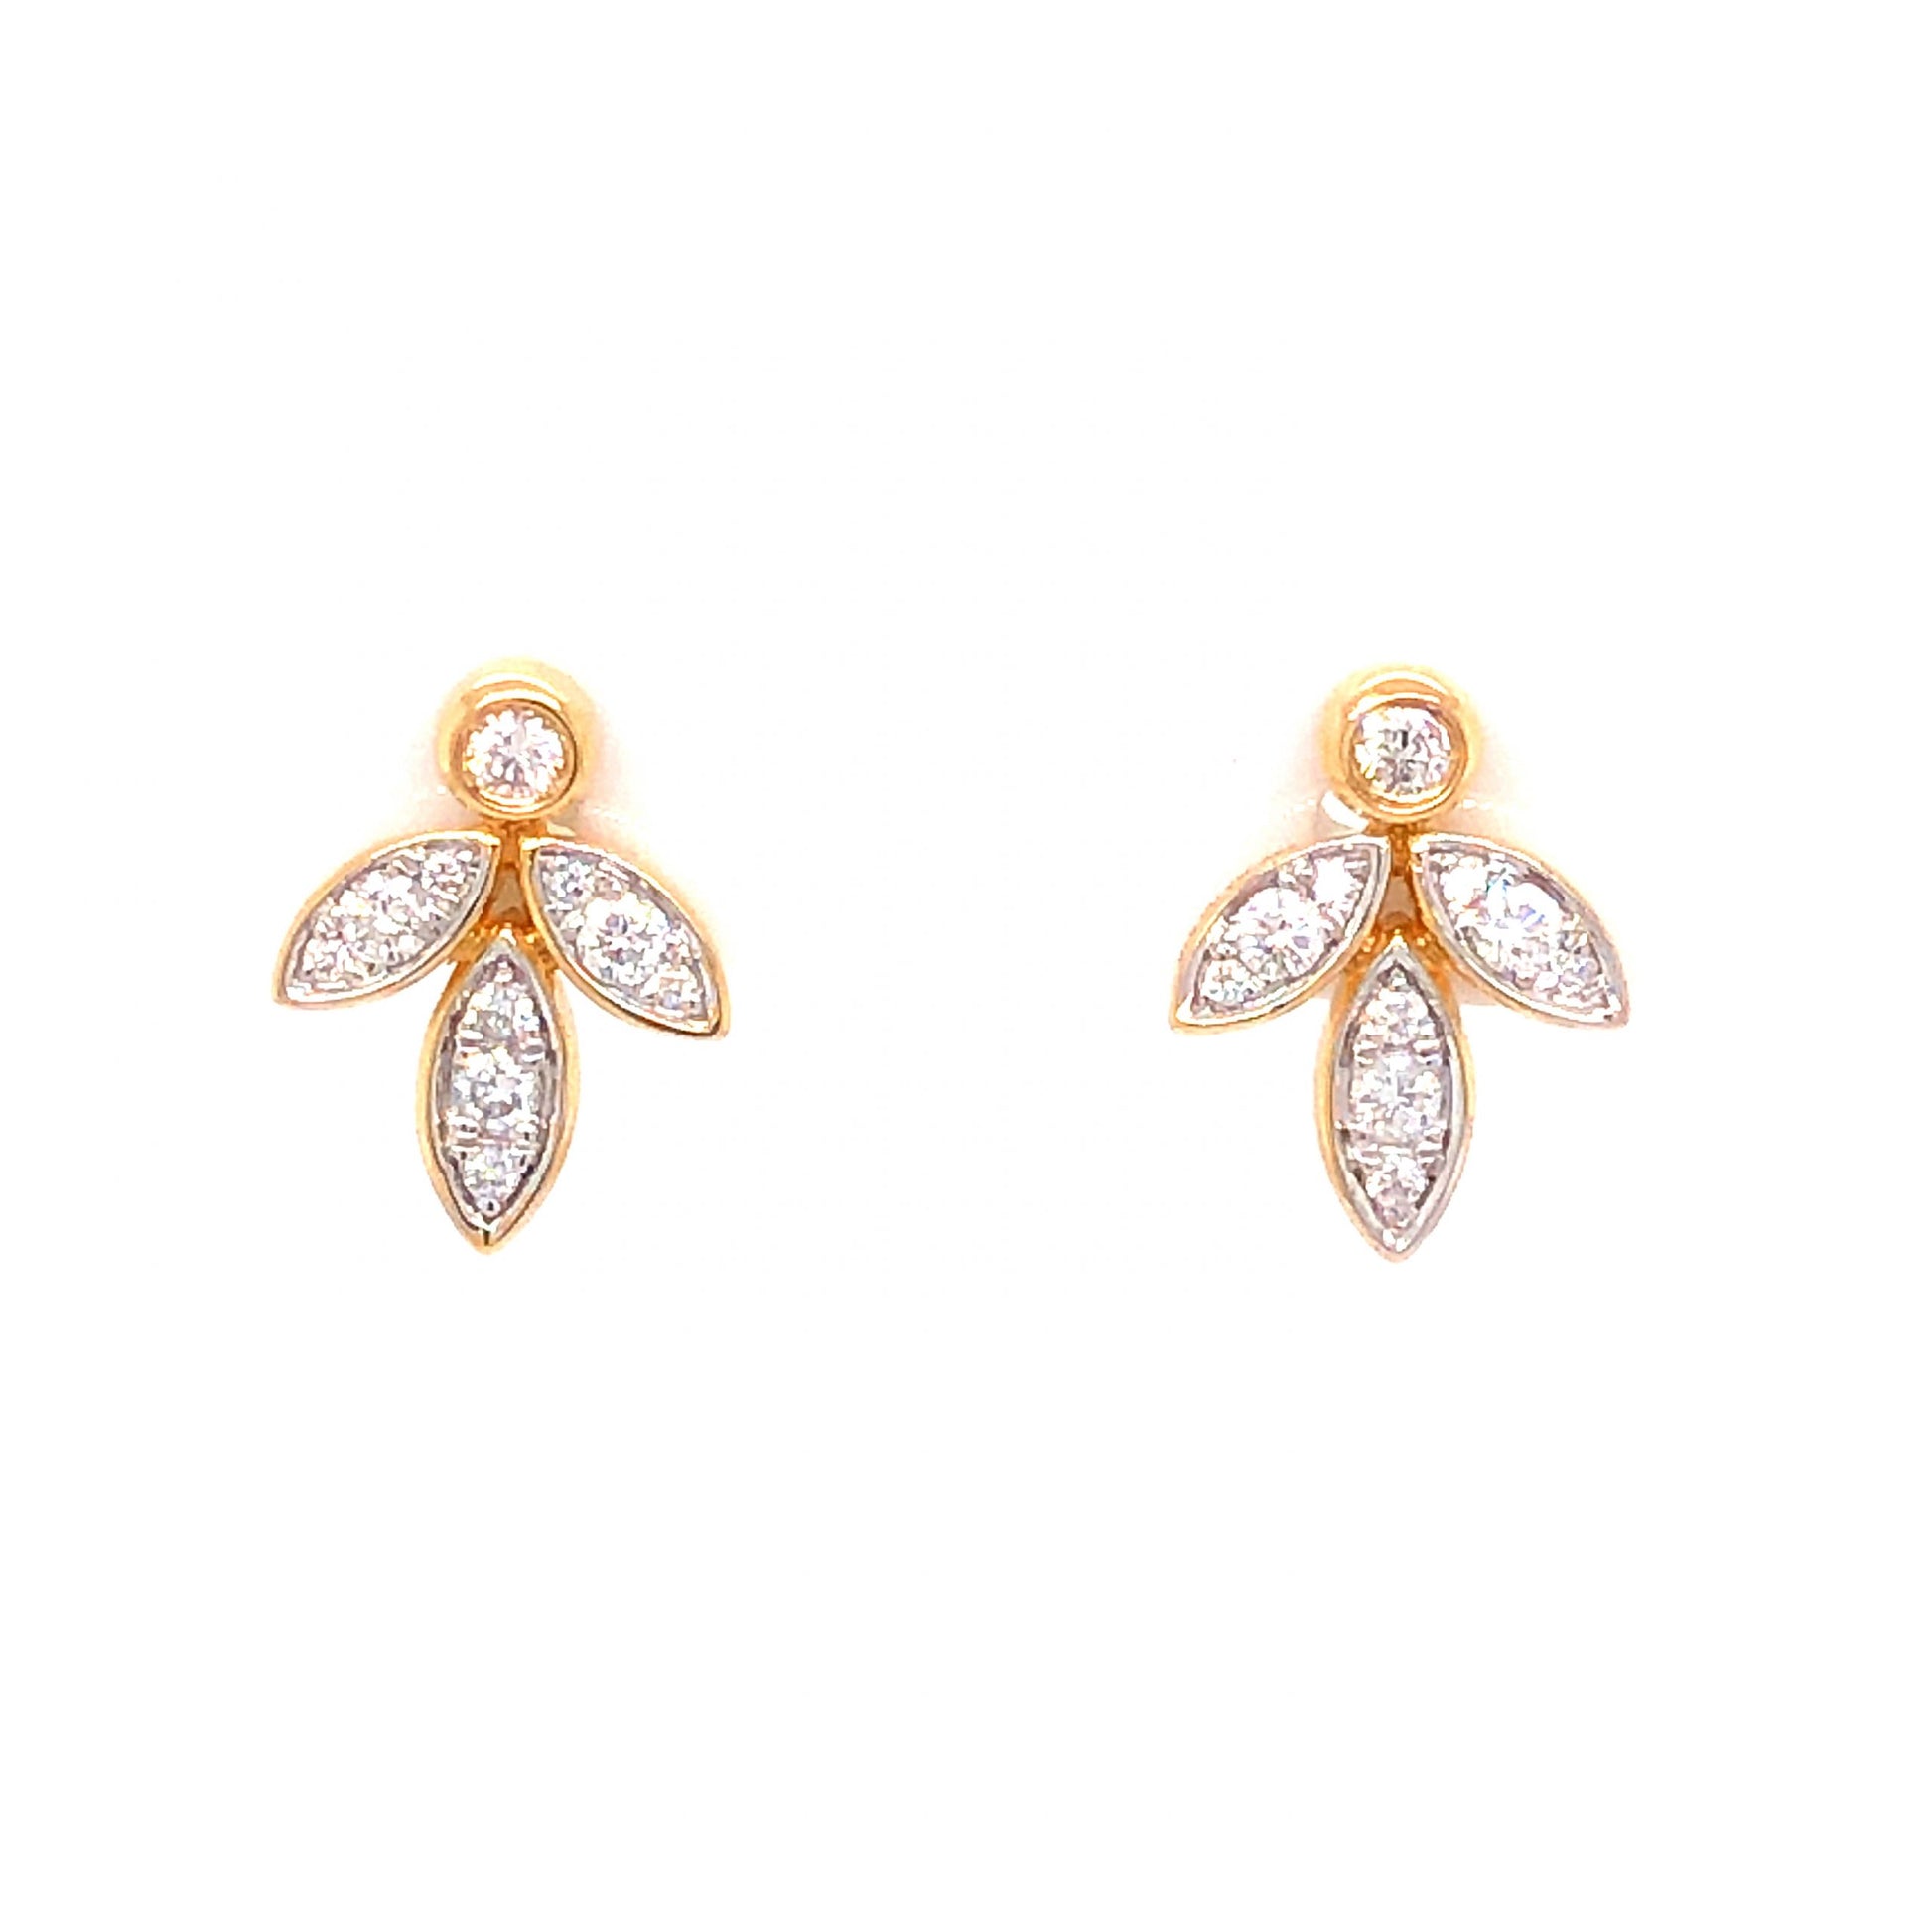 .27 Diamond Cluster Stud Earrings in 18k Yellow Gold